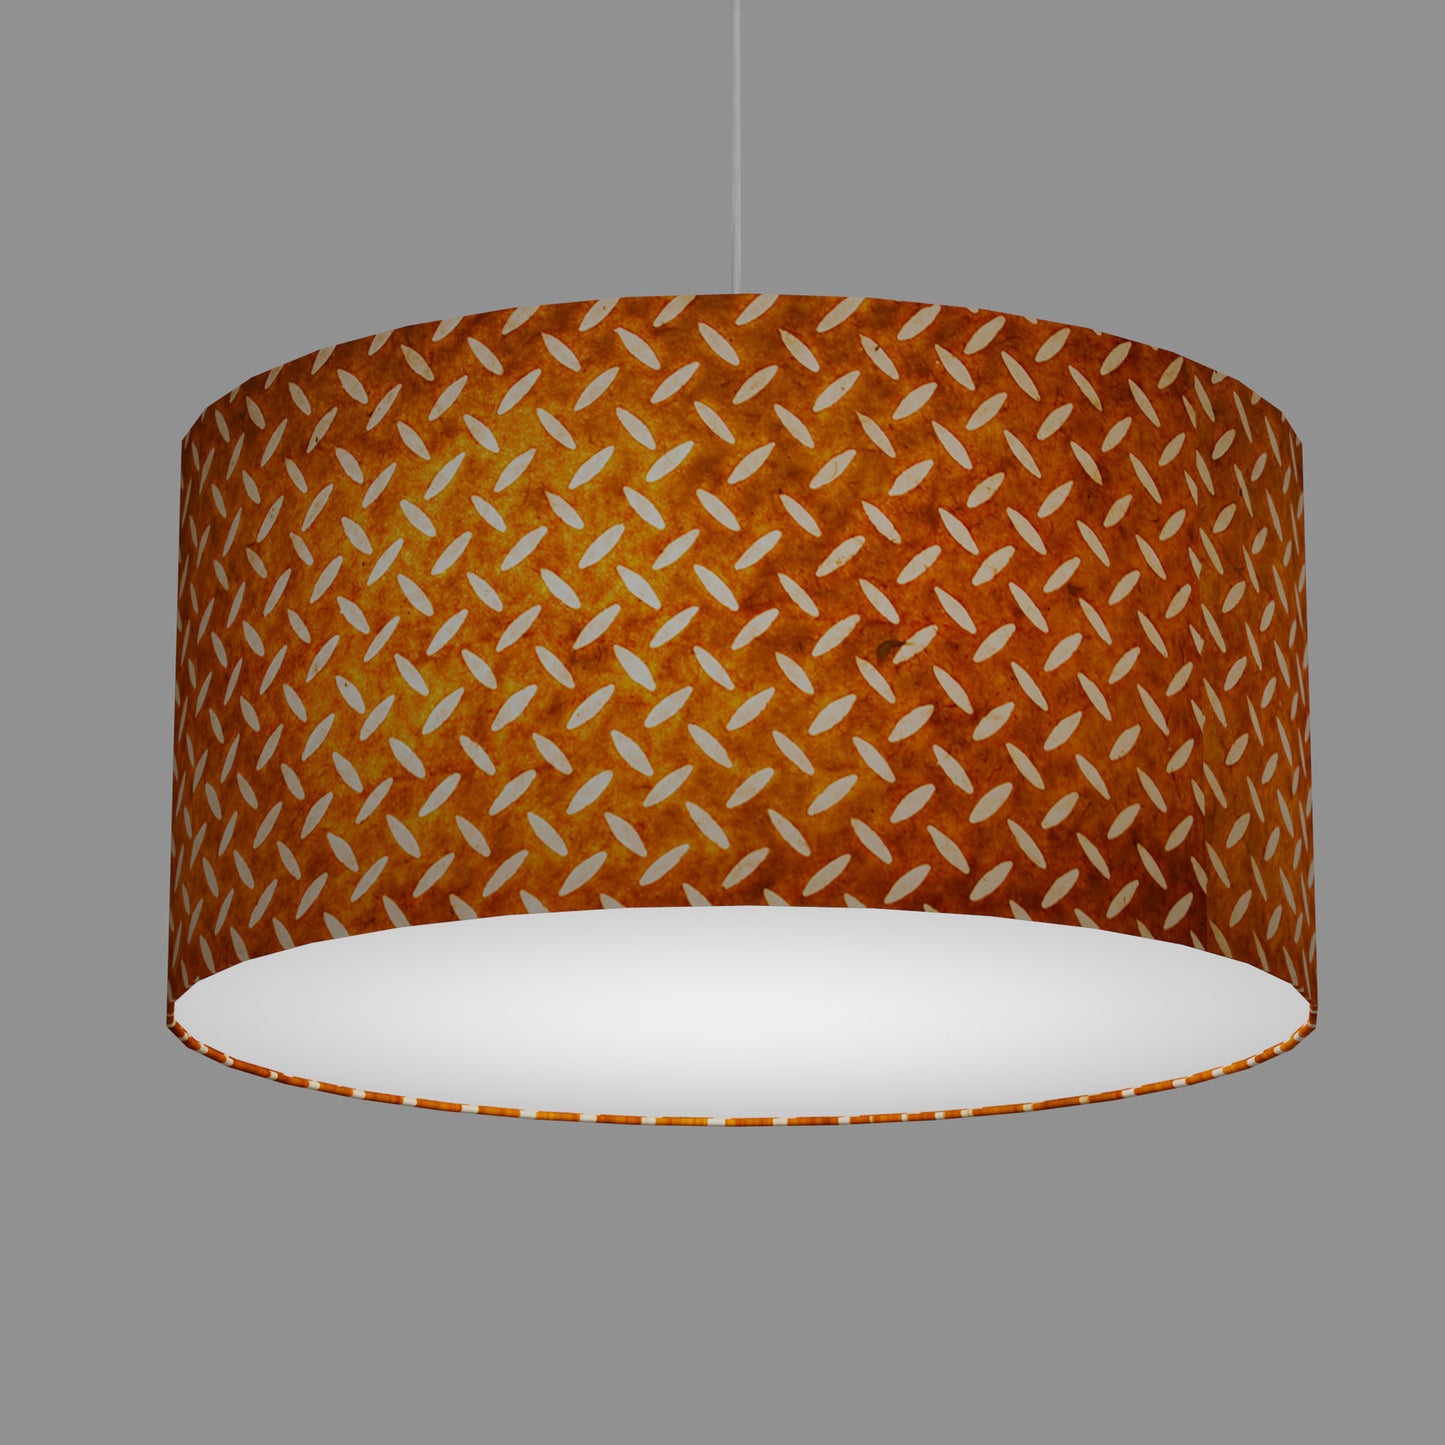 Drum Lamp Shade - P12 - Batik Tread Plate Brown, 60cm(d) x 30cm(h)